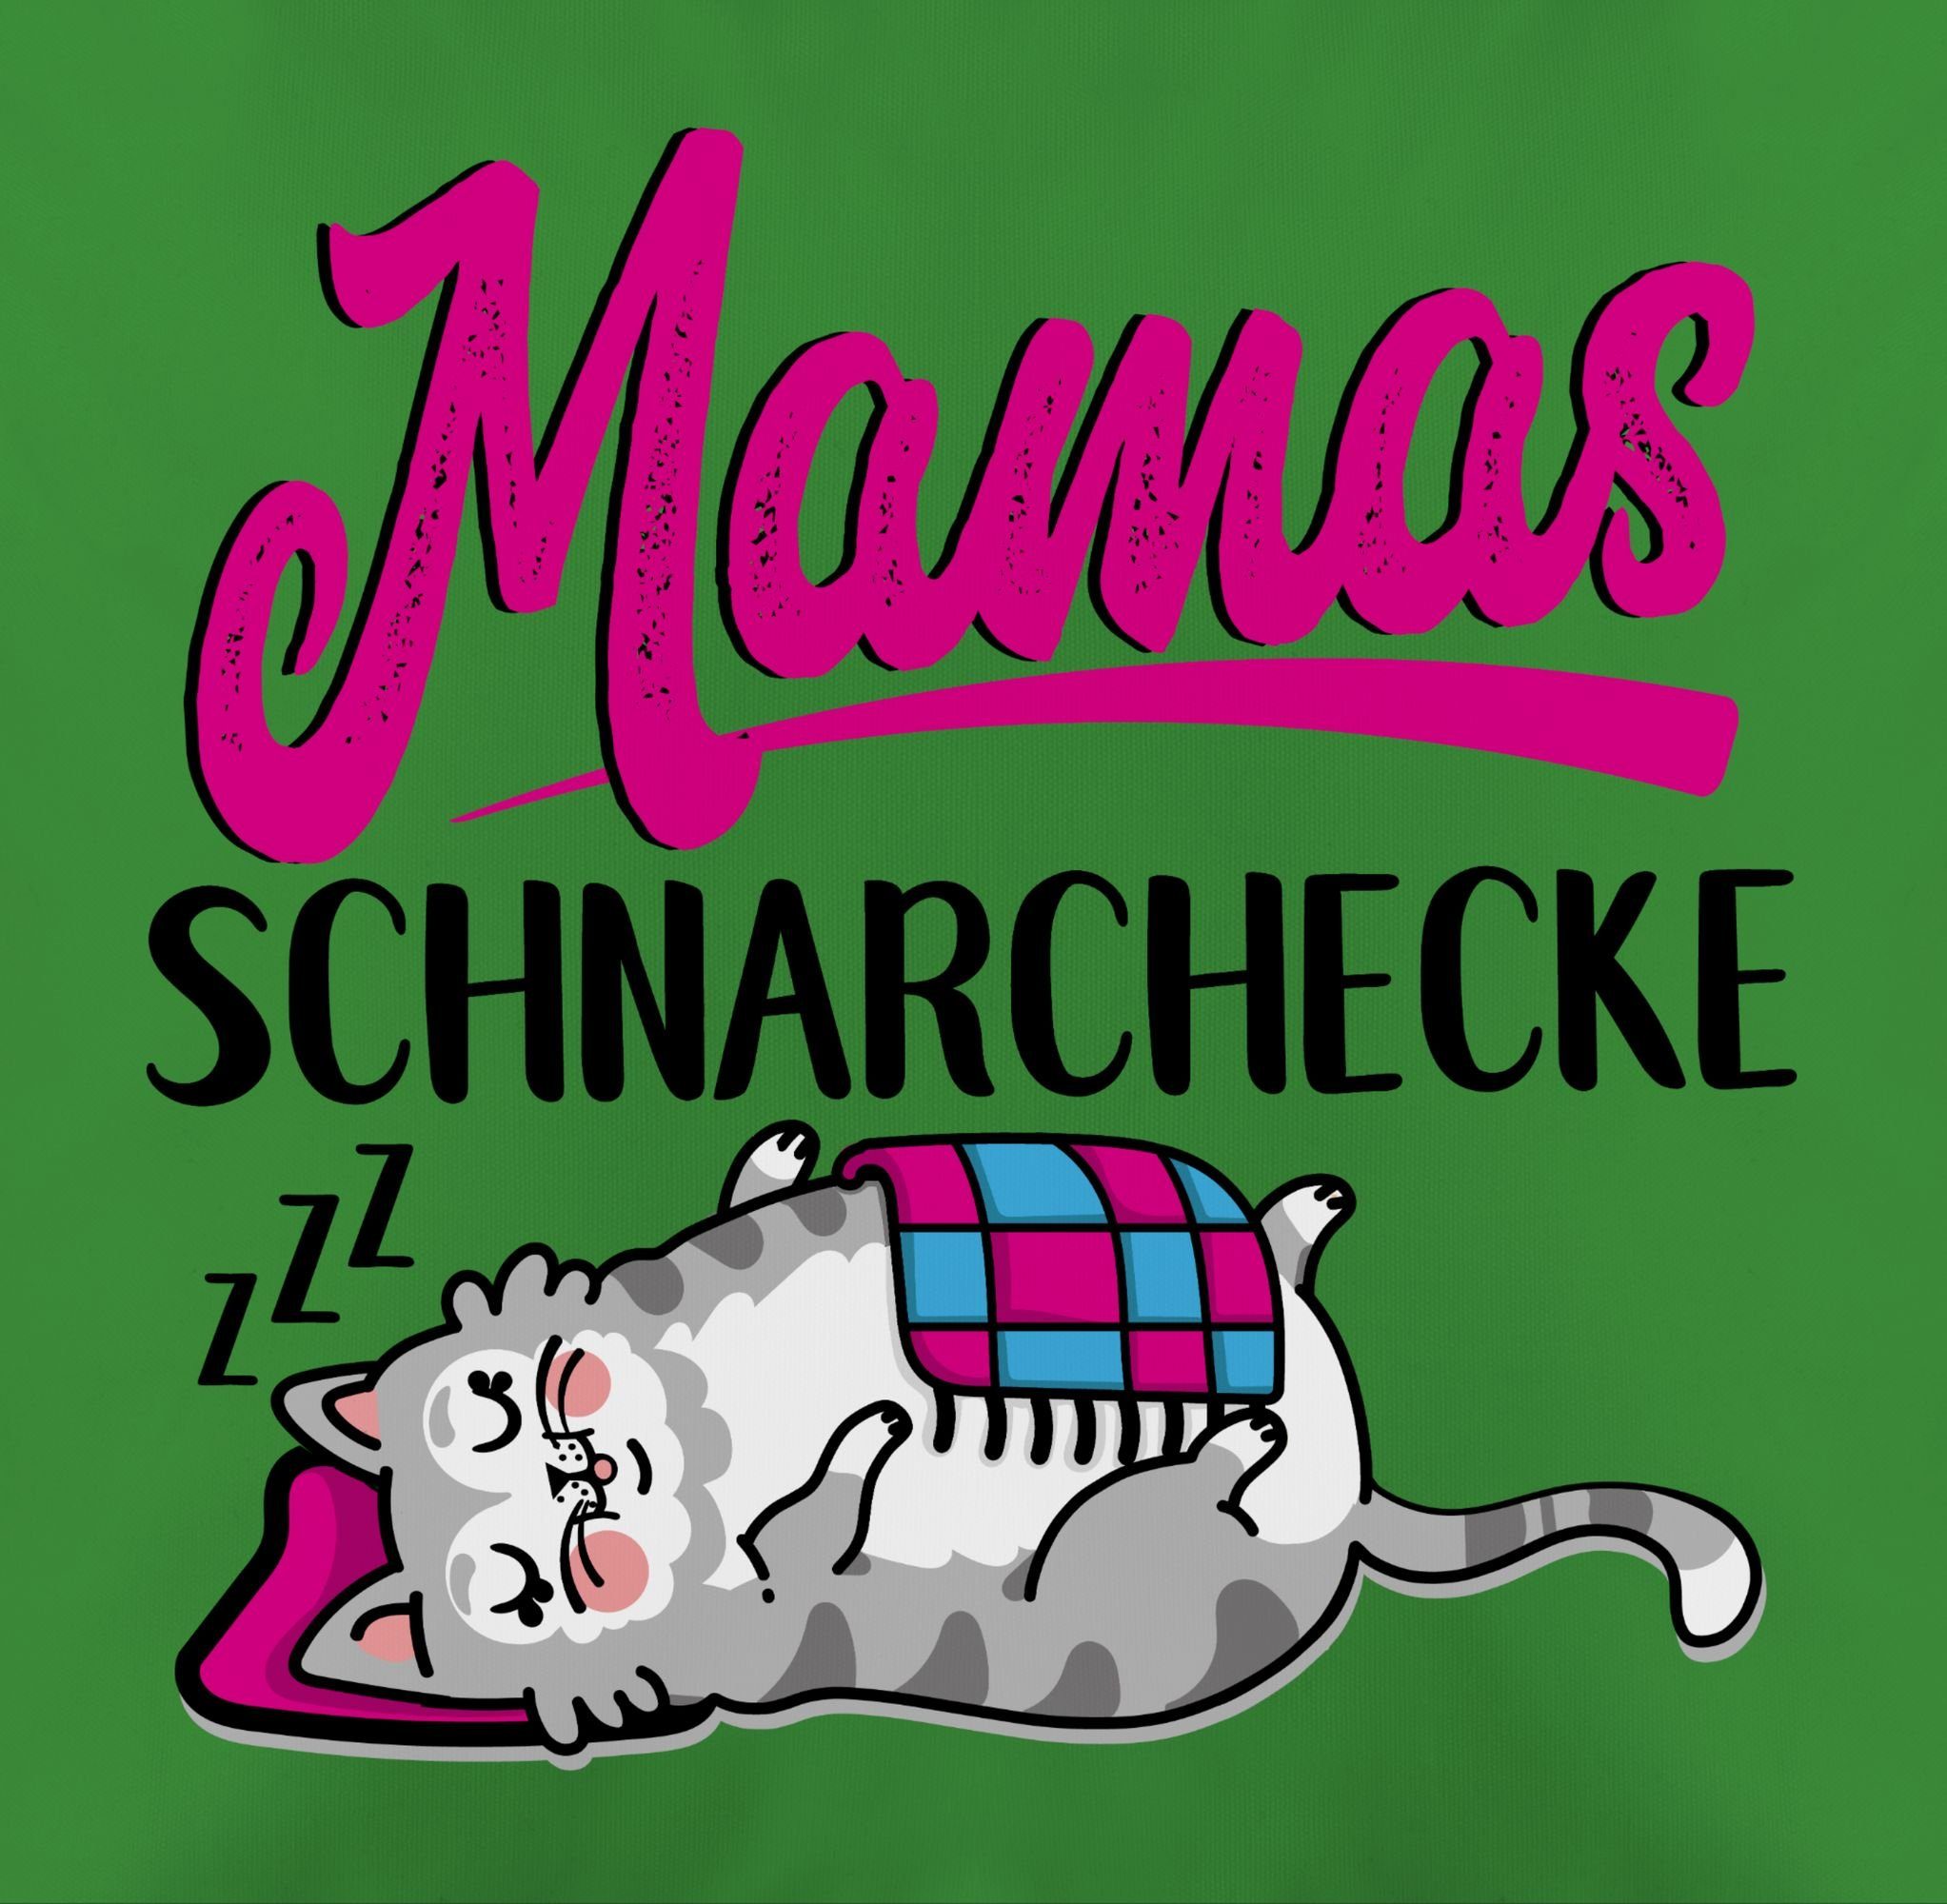 I Schlafplatz, Muttertagsgeschenk Shirtracer Mamas 3 Dekokissen Schnarchecke Grün